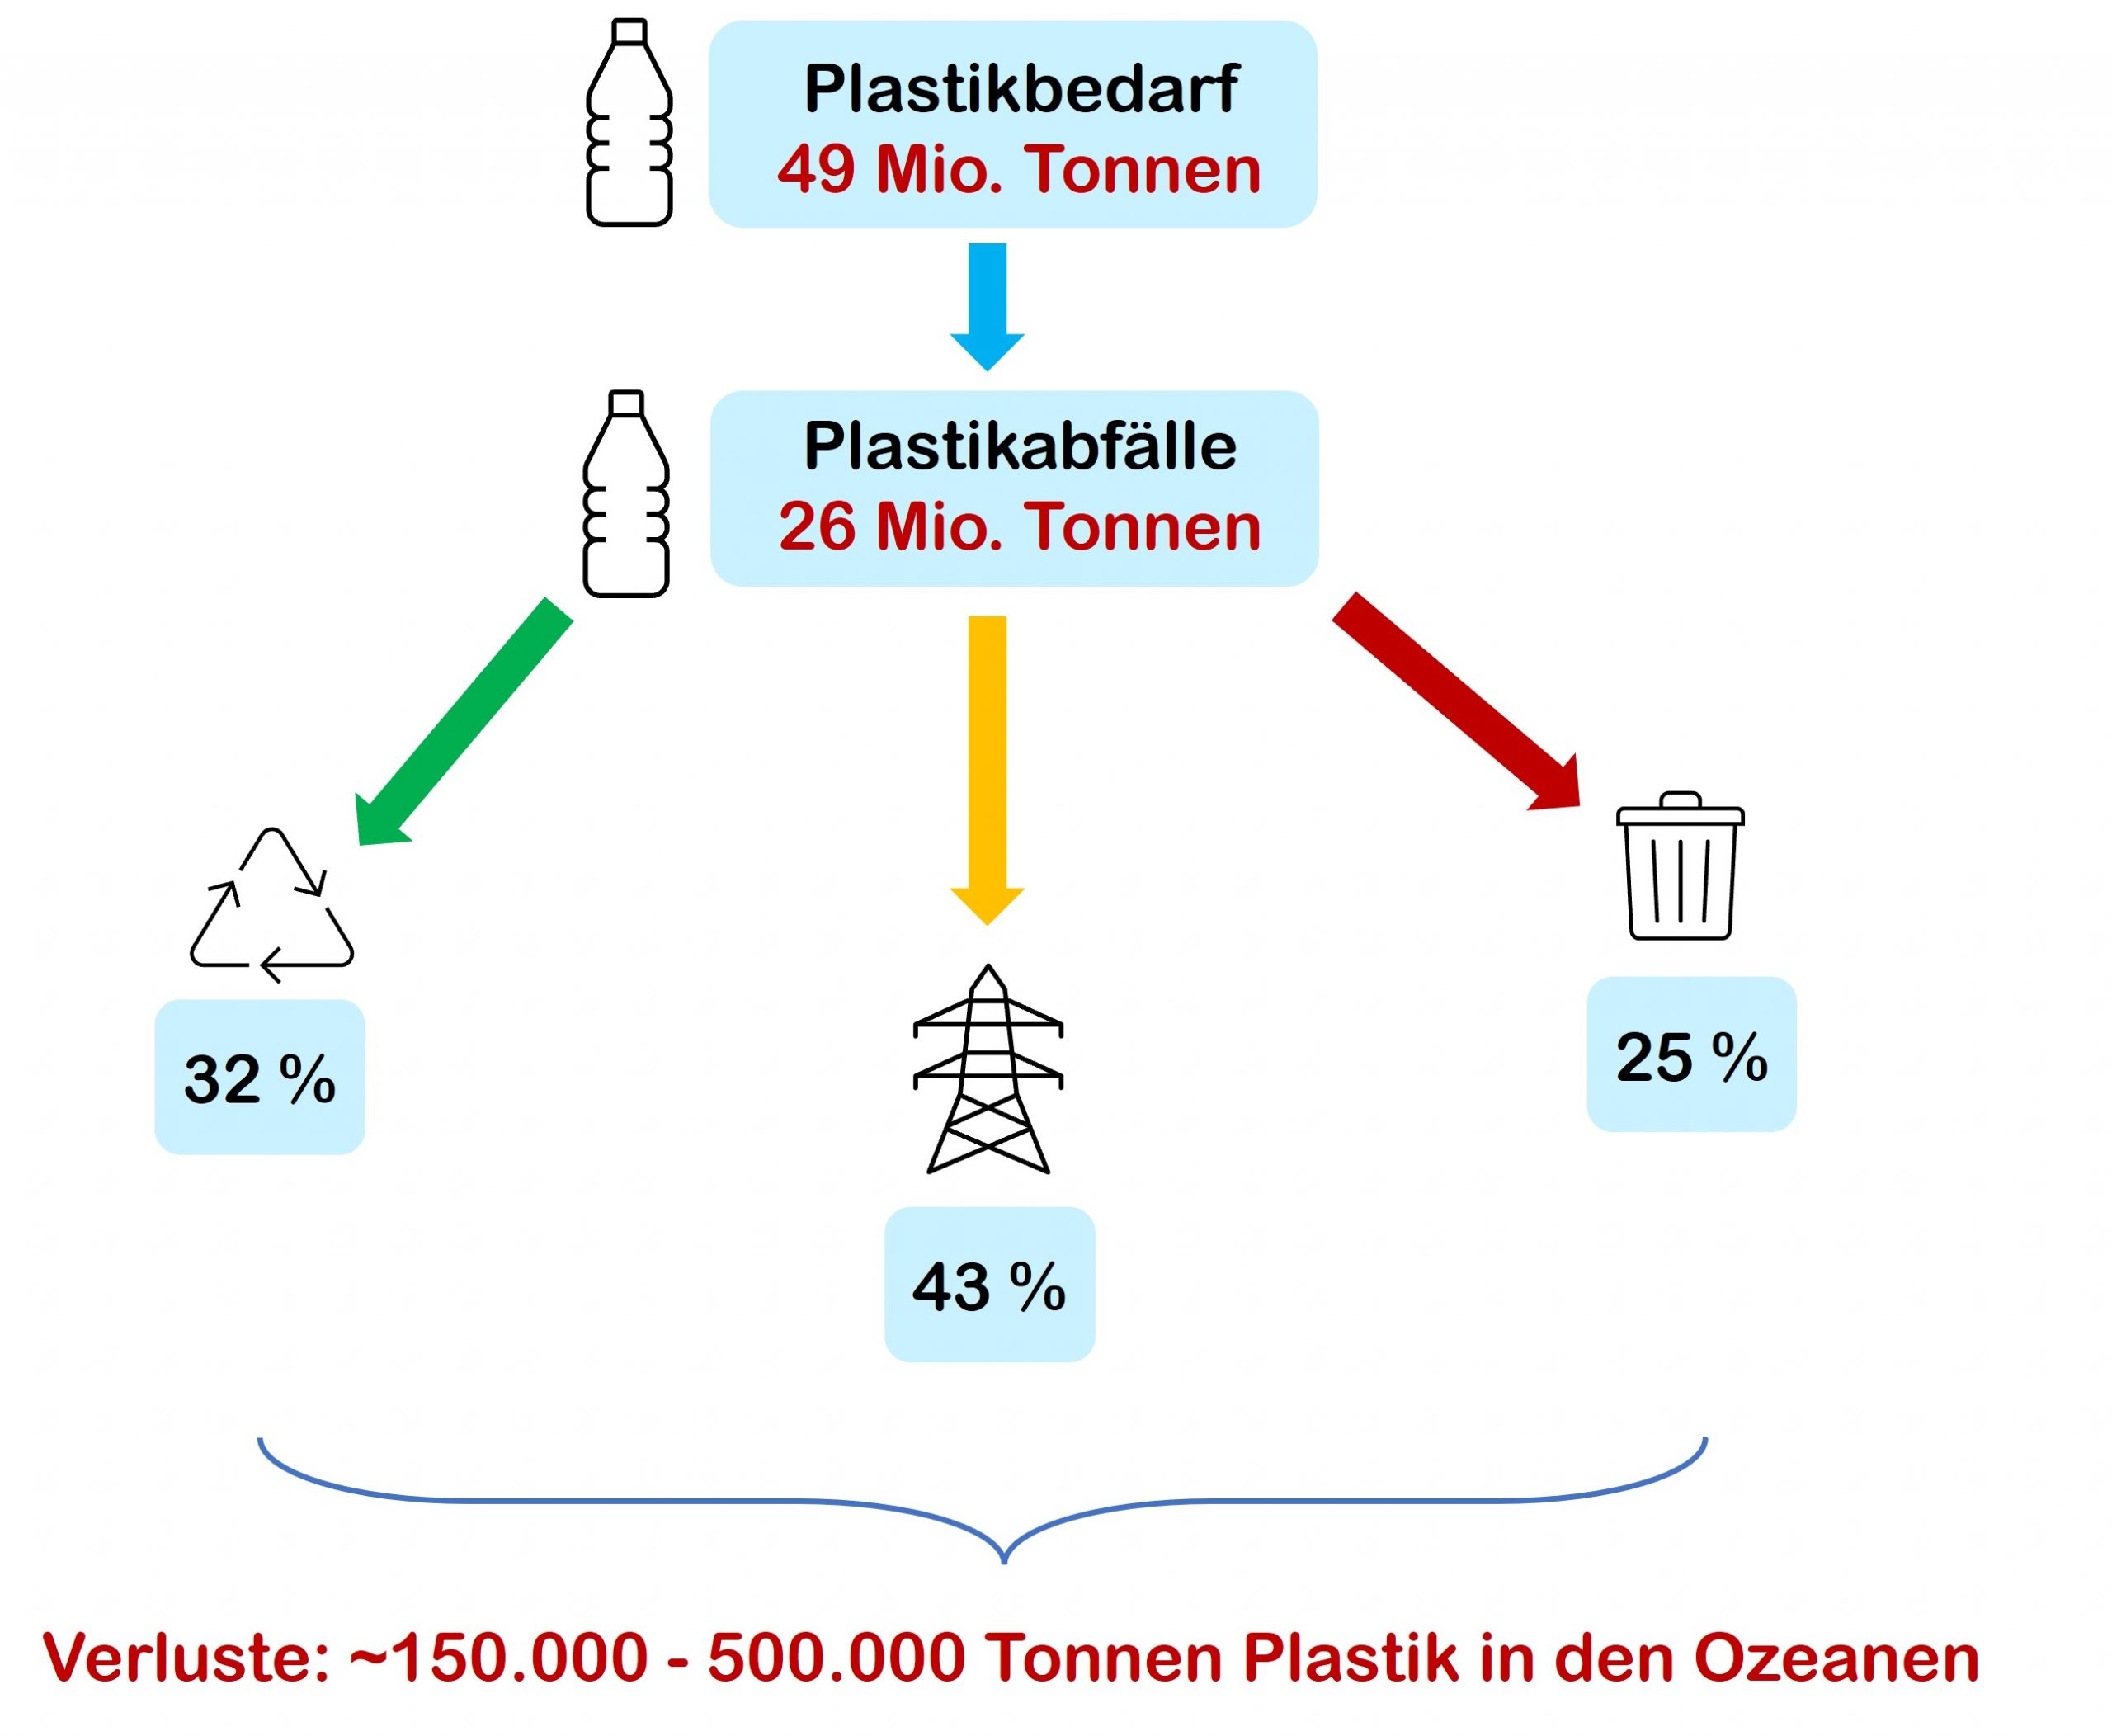 Plastikbedarf und Entsorgung von Abfällen in der EU. (Basierend auf Daten des Europäischen Parlaments: https://www.europarl.europa.eu/news/en/headlines/society/20181212STO21610/plastic-waste-and-recycling-in-the-eu-facts-and-figures) 